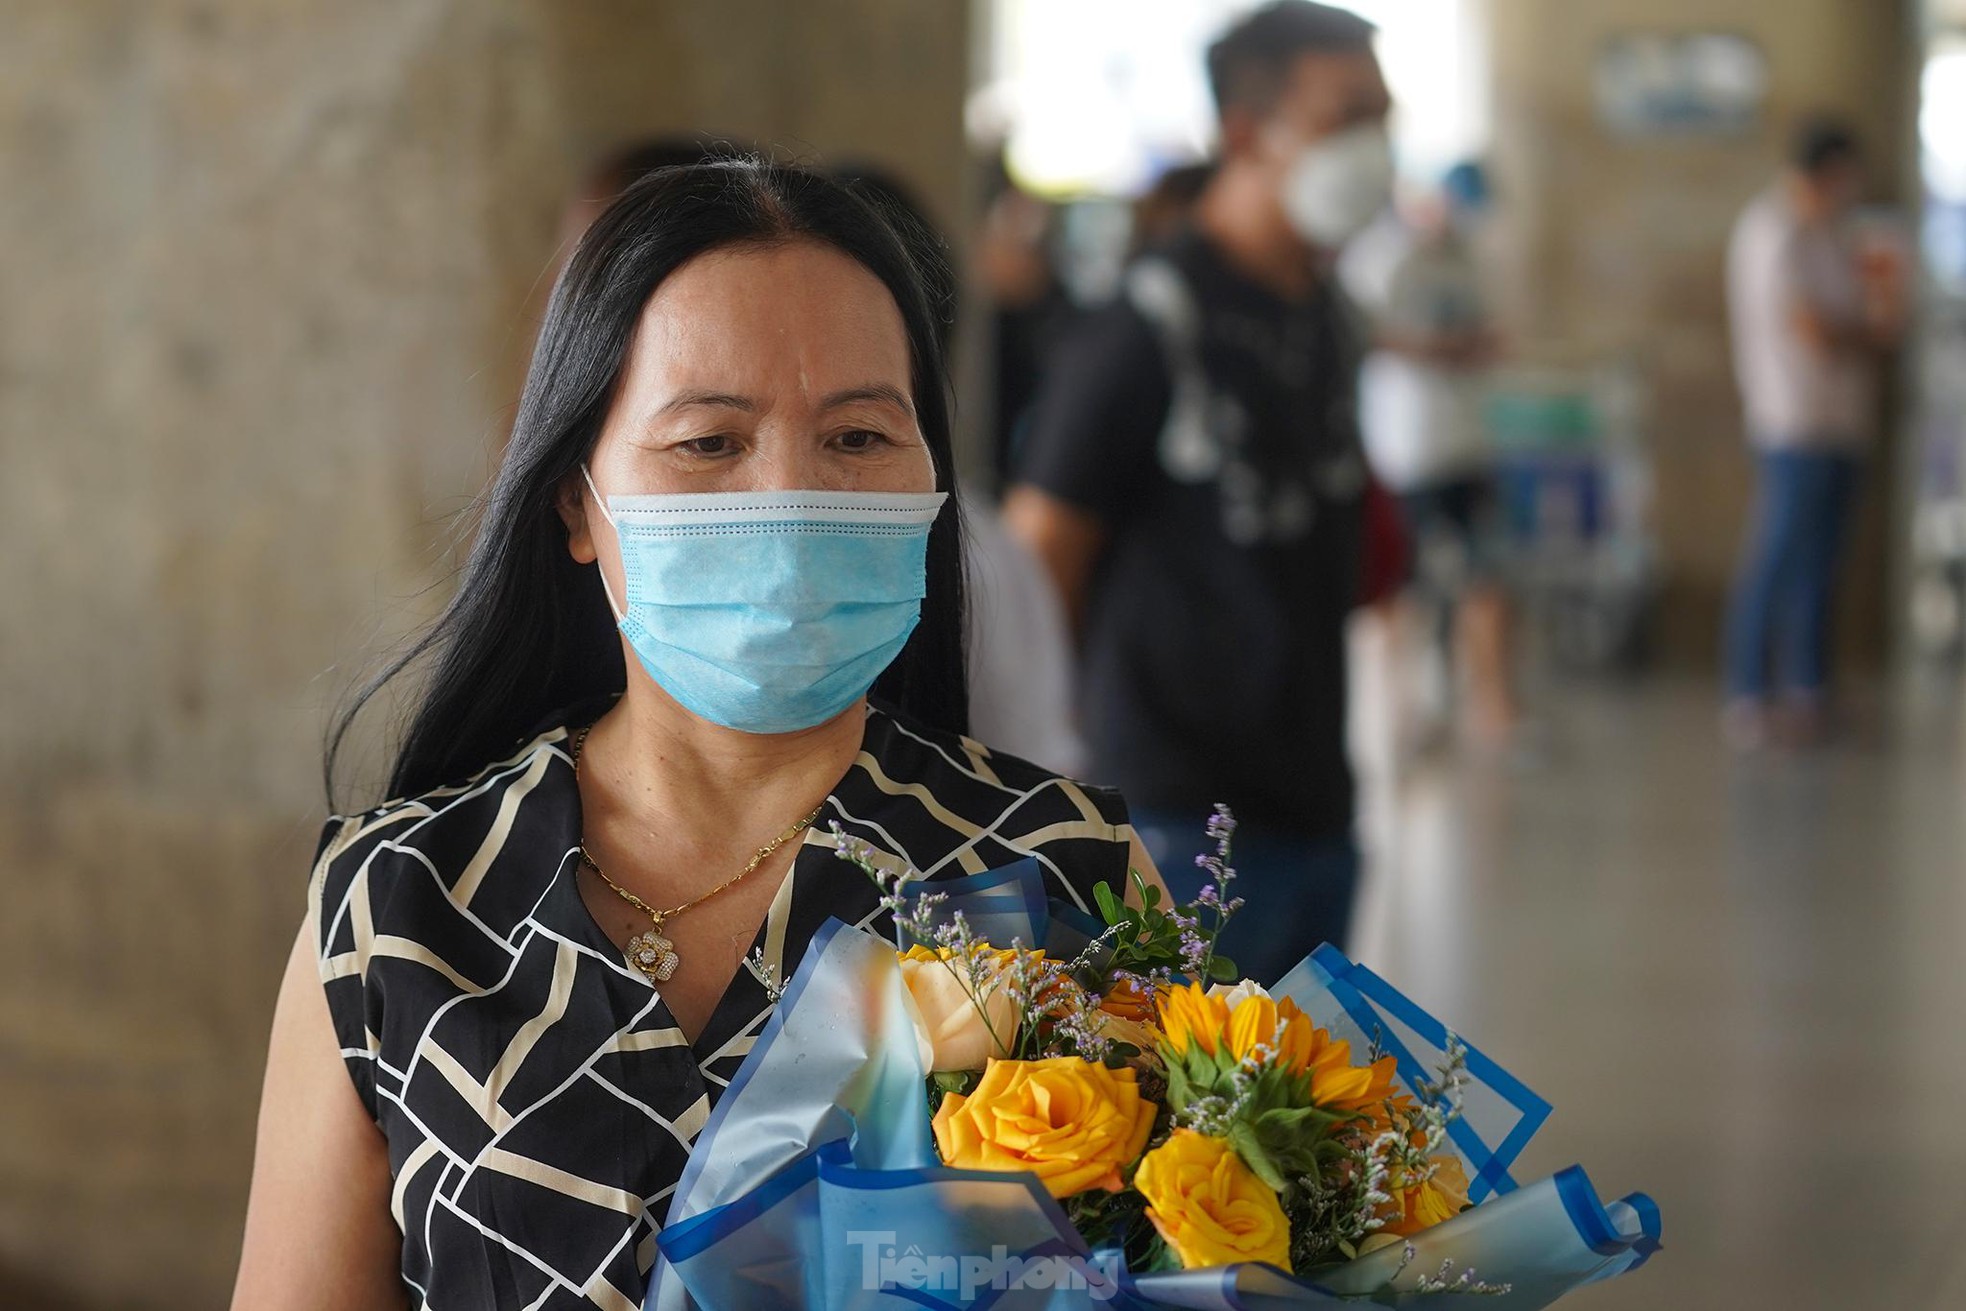 Vỡ òa cảm xúc tại sân bay Tân Sơn Nhất trong ngày đầu mở lại đường bay quốc tế - Ảnh 6.